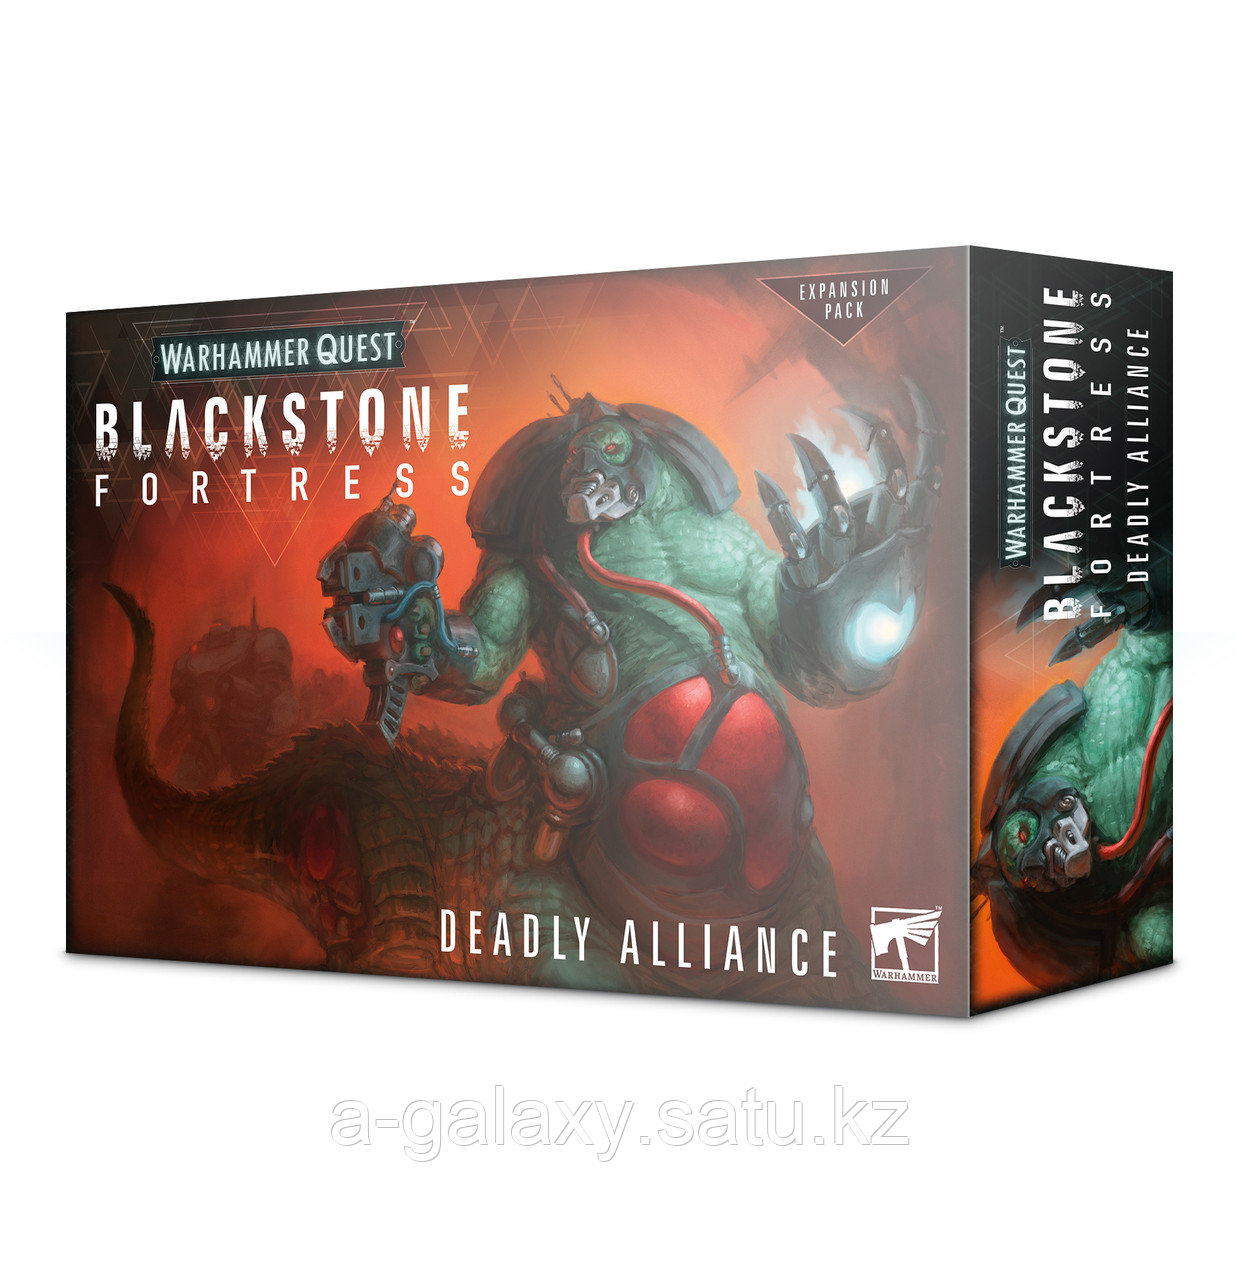 Blackstone Fortress: Dealy alliance (Чернокаменная Крепость: Смертельный альянс)